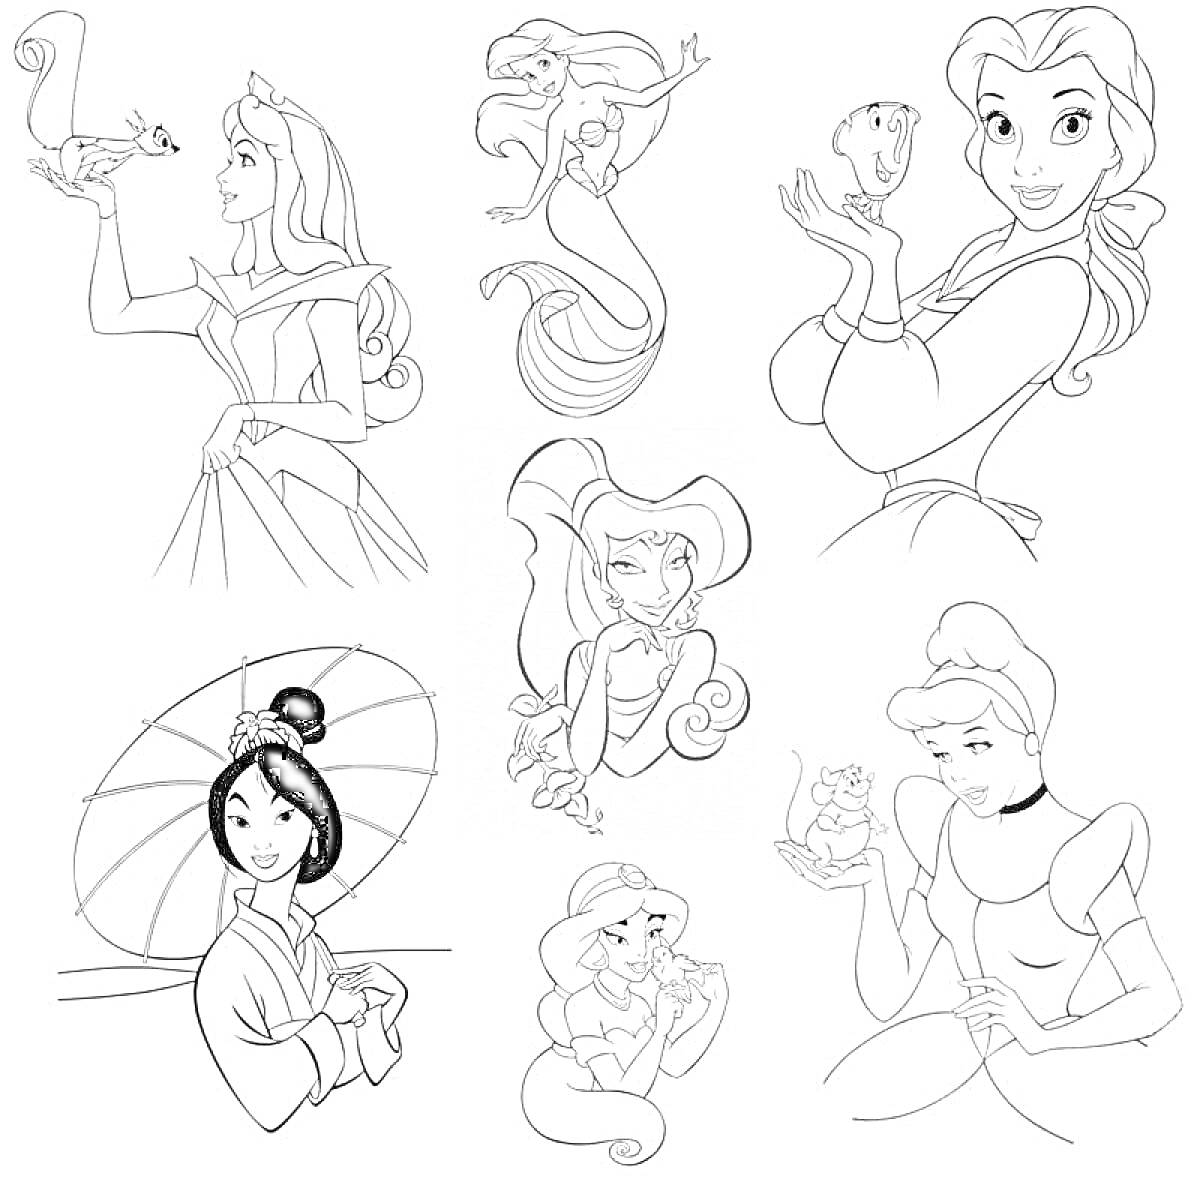 Раскраска Принцессы Дисней. Принцессы Аврора, Ариэль в двух образах (русалка и с хвостом), Бель с чашкой, Мулан с веером, Ариэль с ракушкой, Золушка